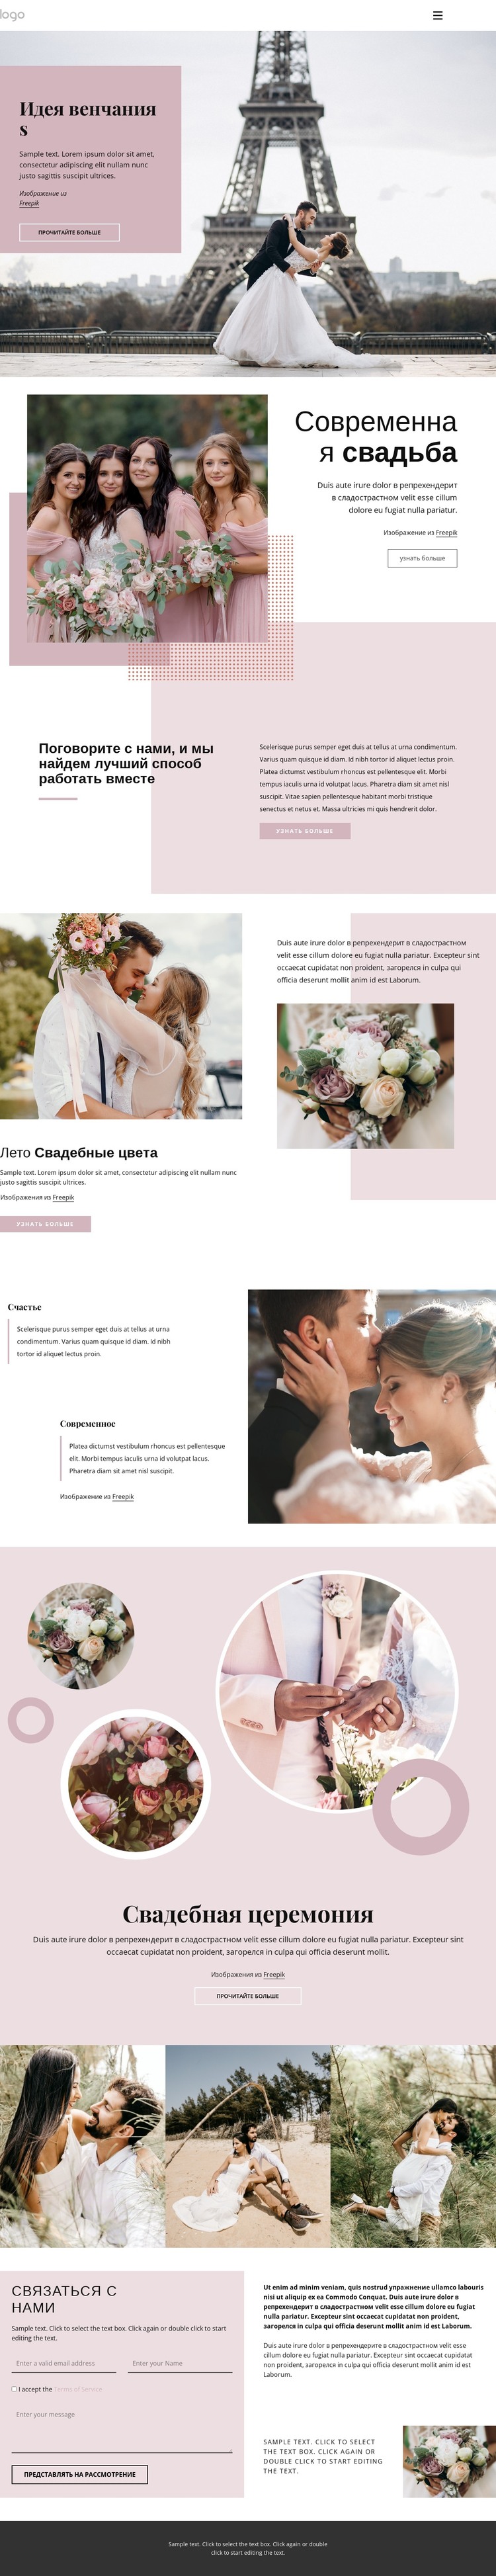 Уникальная свадебная церемония HTML шаблон